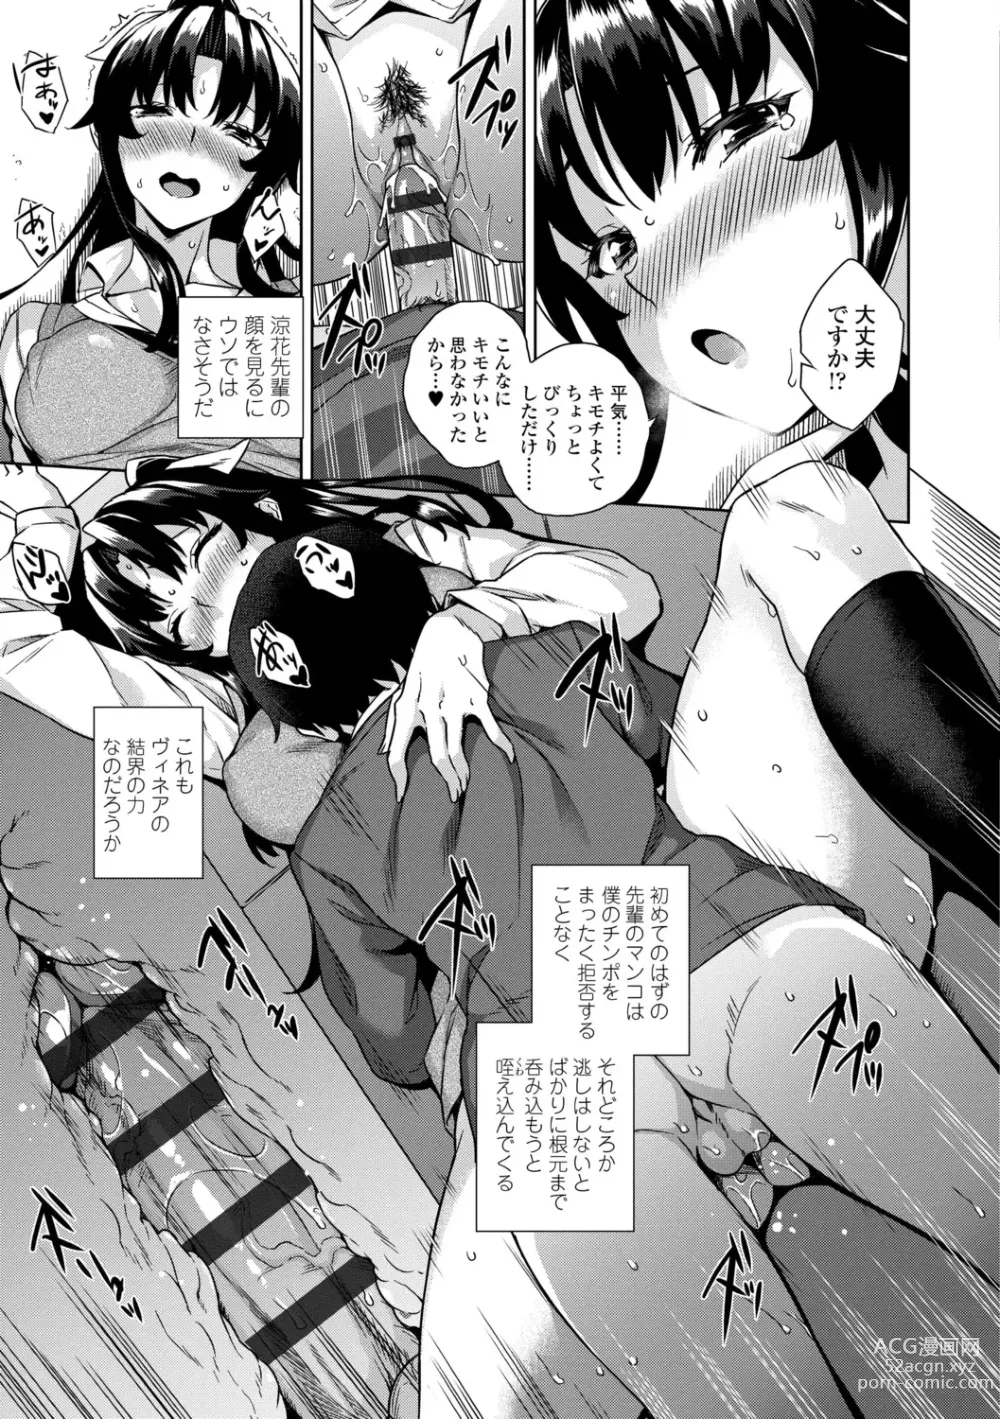 Page 37 of manga Akuma de JK！